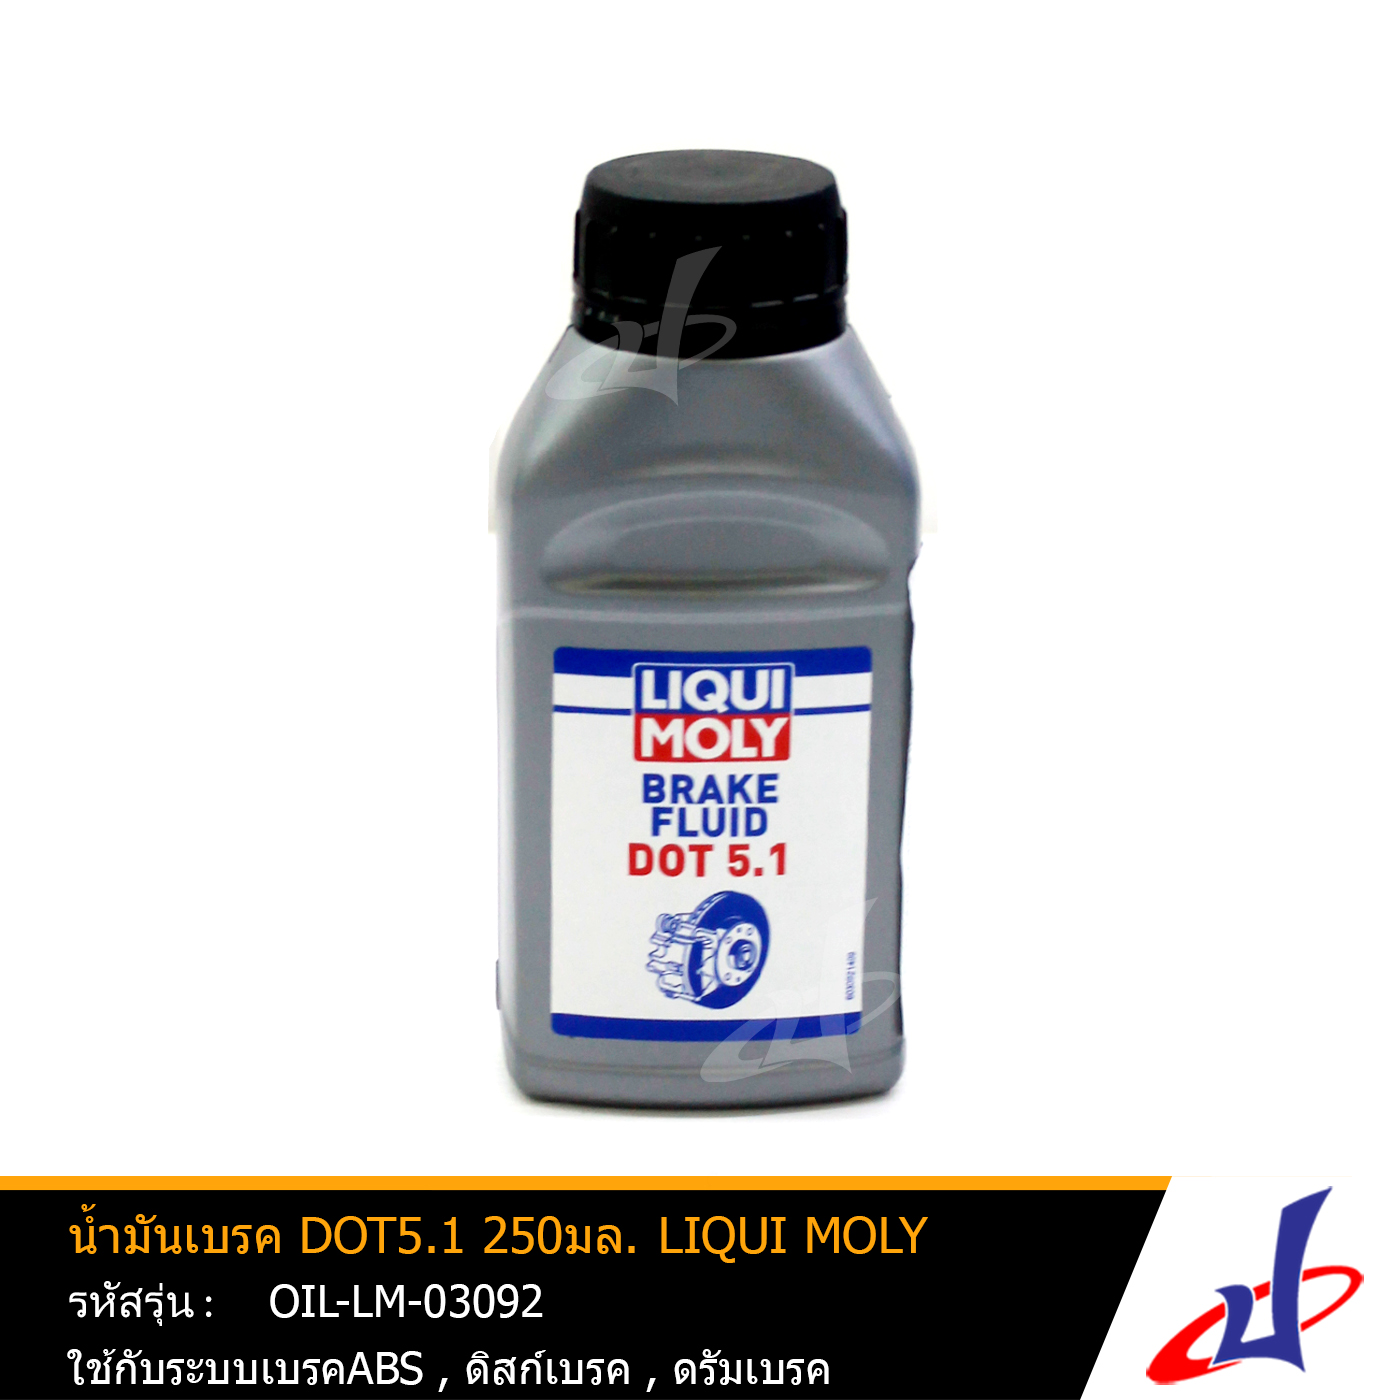 น้ำมันเบรค DOT5.1 ขนาด 250มล.  LIQUI MOLY (BRAKE FIUID DOT5.1 SYNTHETIC)  น้ำมันเบรคเกรดสังเคราะห์ ไม่กัดกร่อนชิ้นส่วนโลหะ สินค้าคุณภาพดี เกรดA  (OIL-LM-03092)